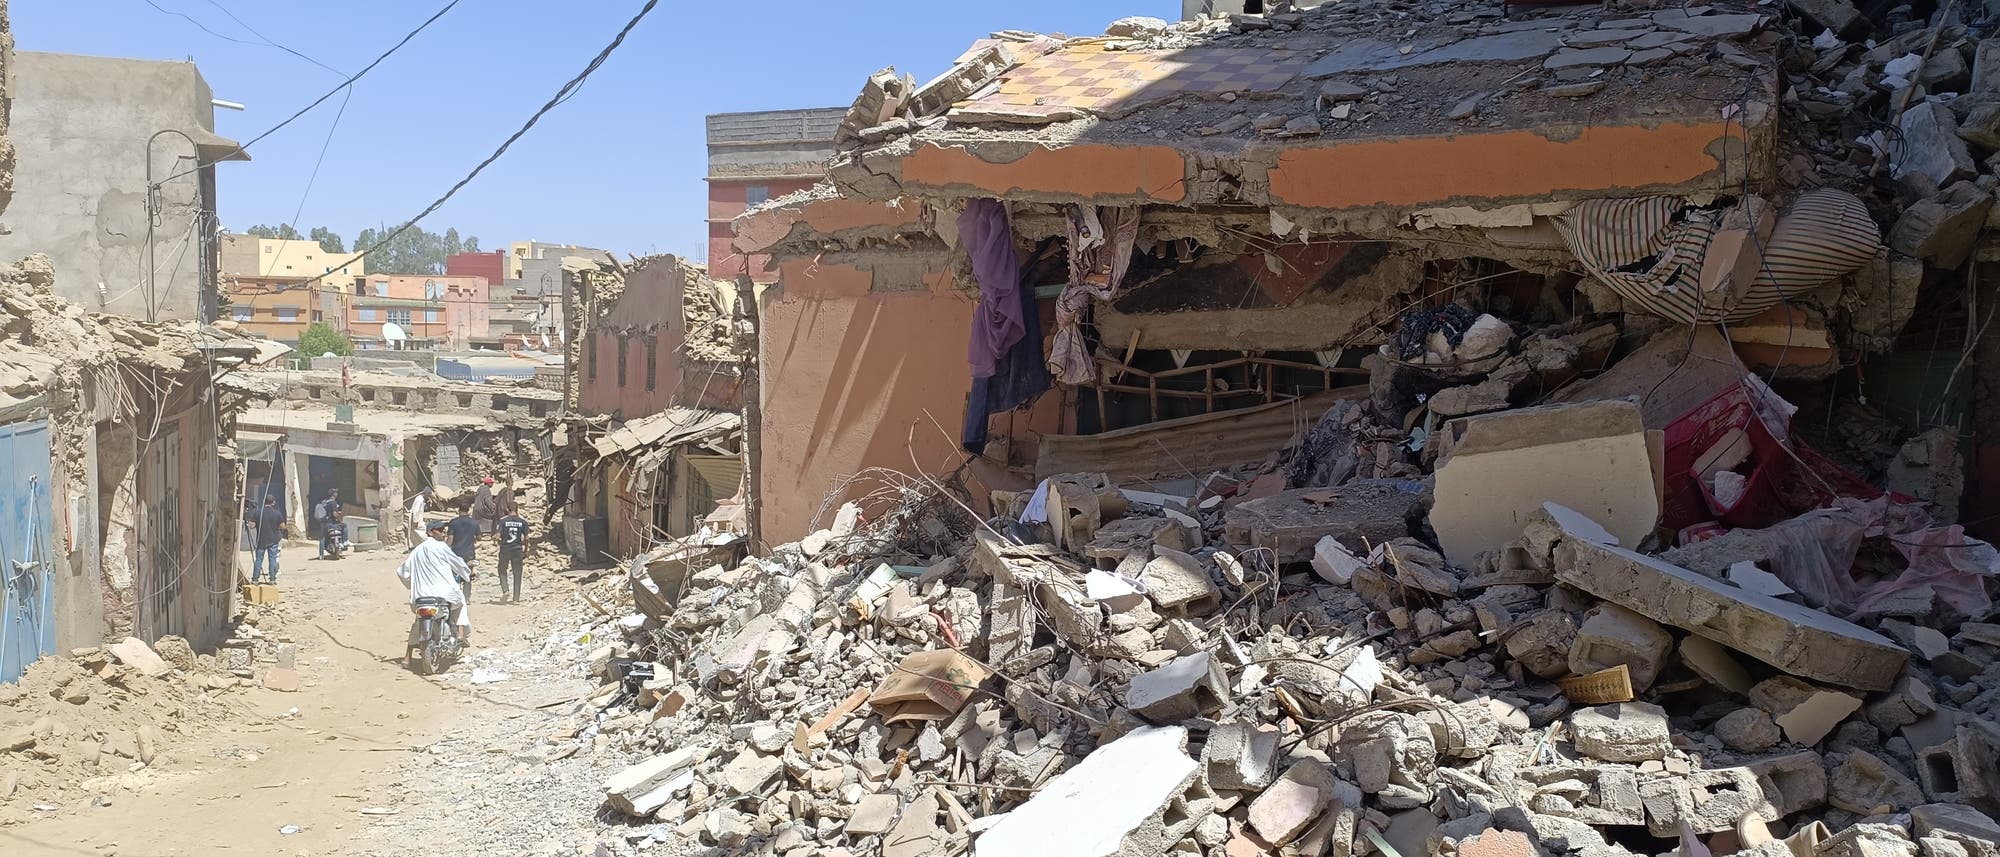 Eine Straße in einer mediterran anmutenden Stadt mit vielen teilweise zerstörten Gebäuden und Trümmern.